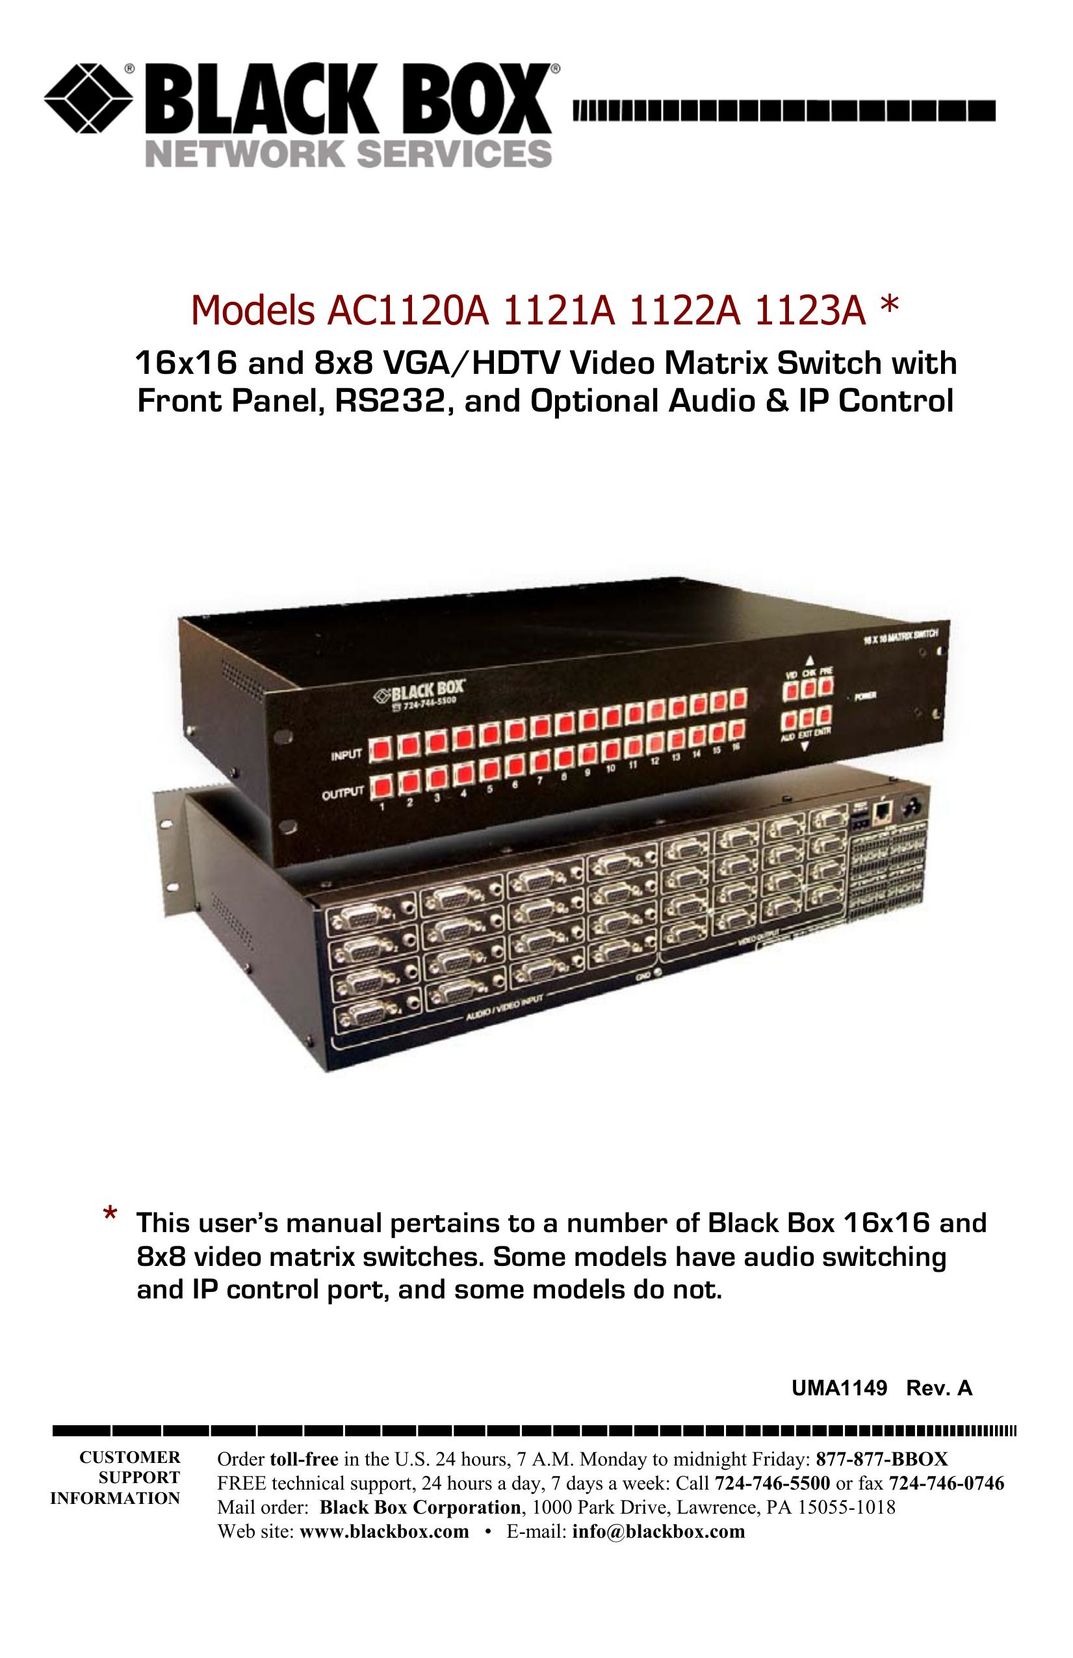 Black Box AC1120A TV Video Accessories User Manual